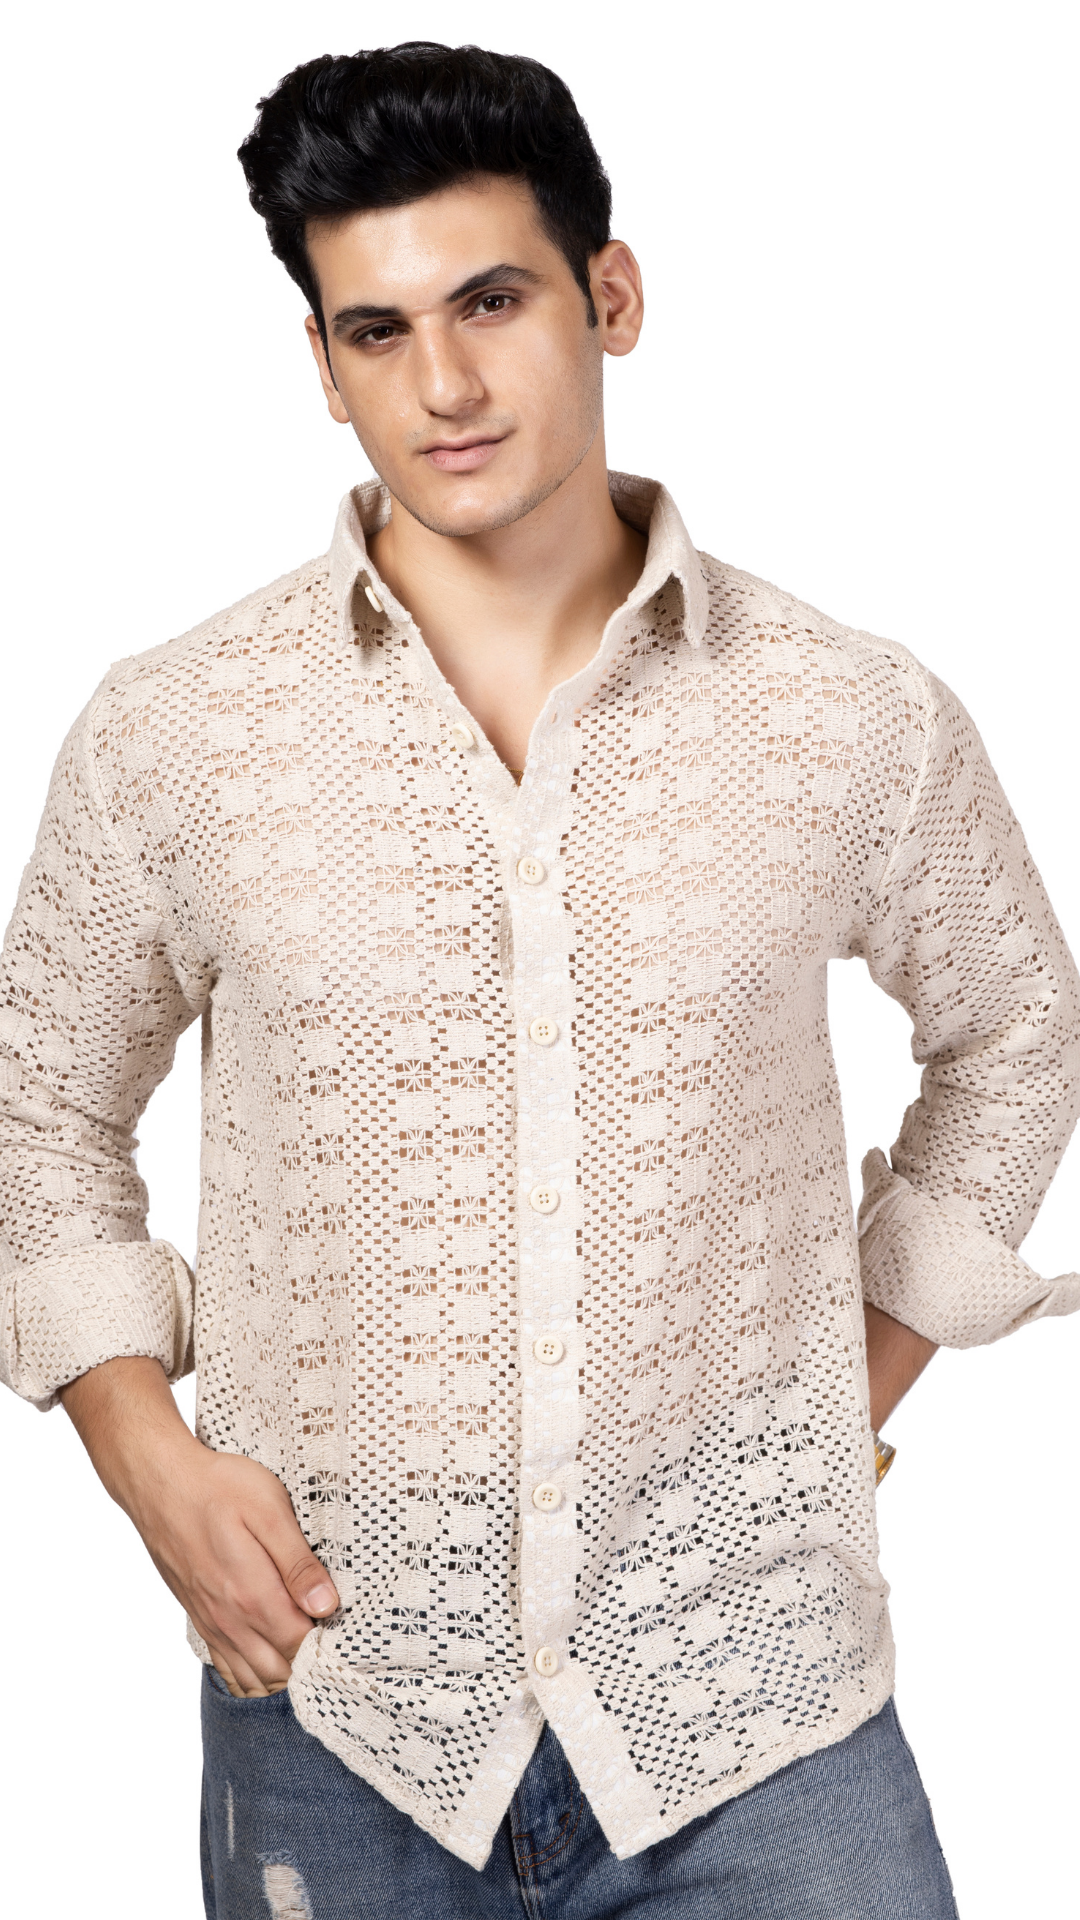 White Box Pattern Knitted Crochet Shirt Full Sleeves